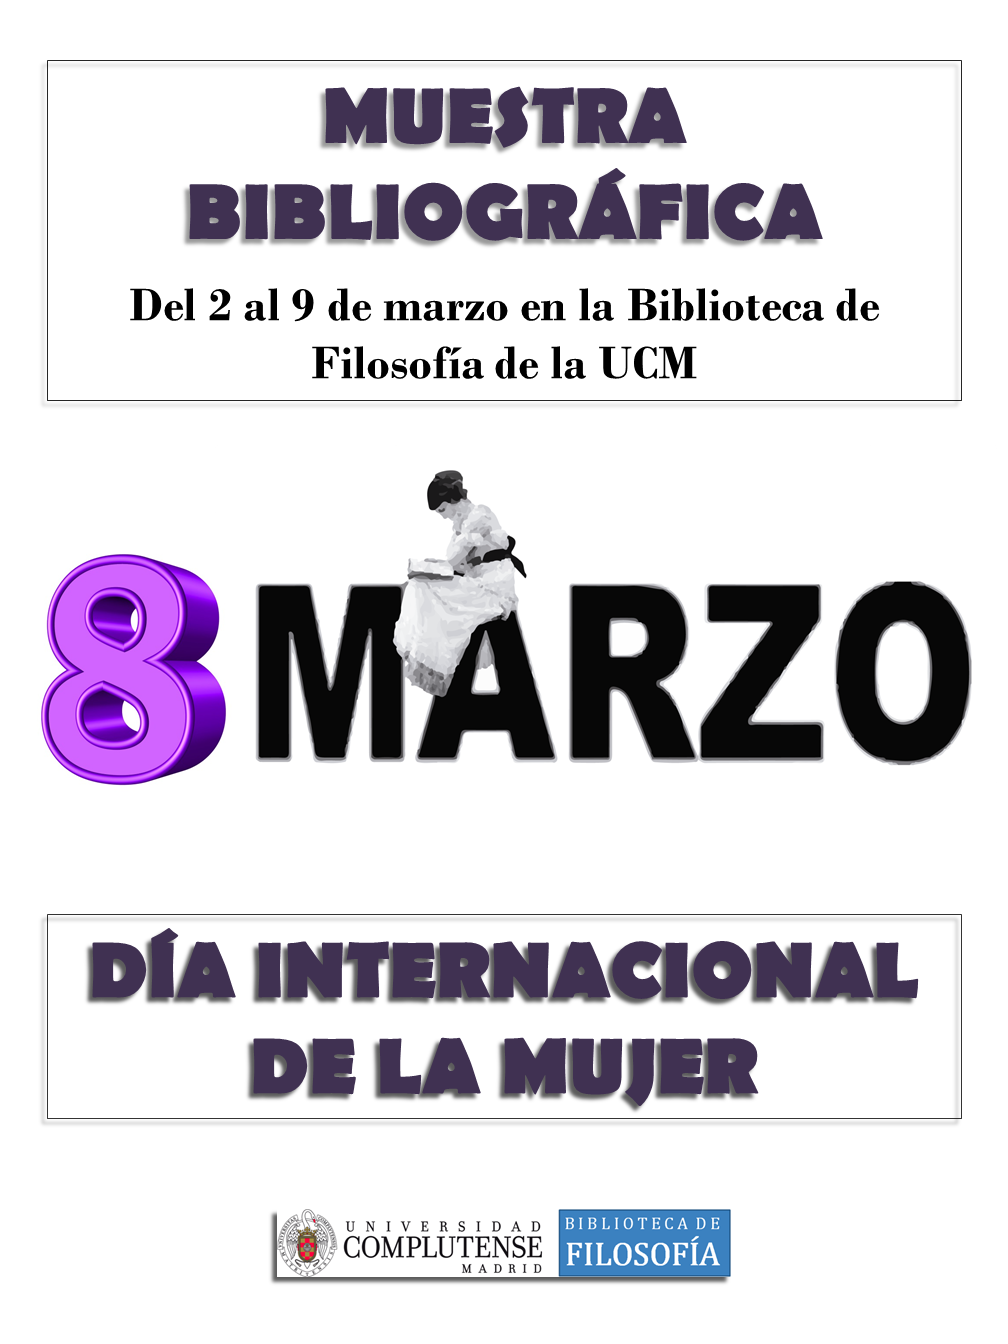 Muestra bibliográfica 8 de marzo de 2020